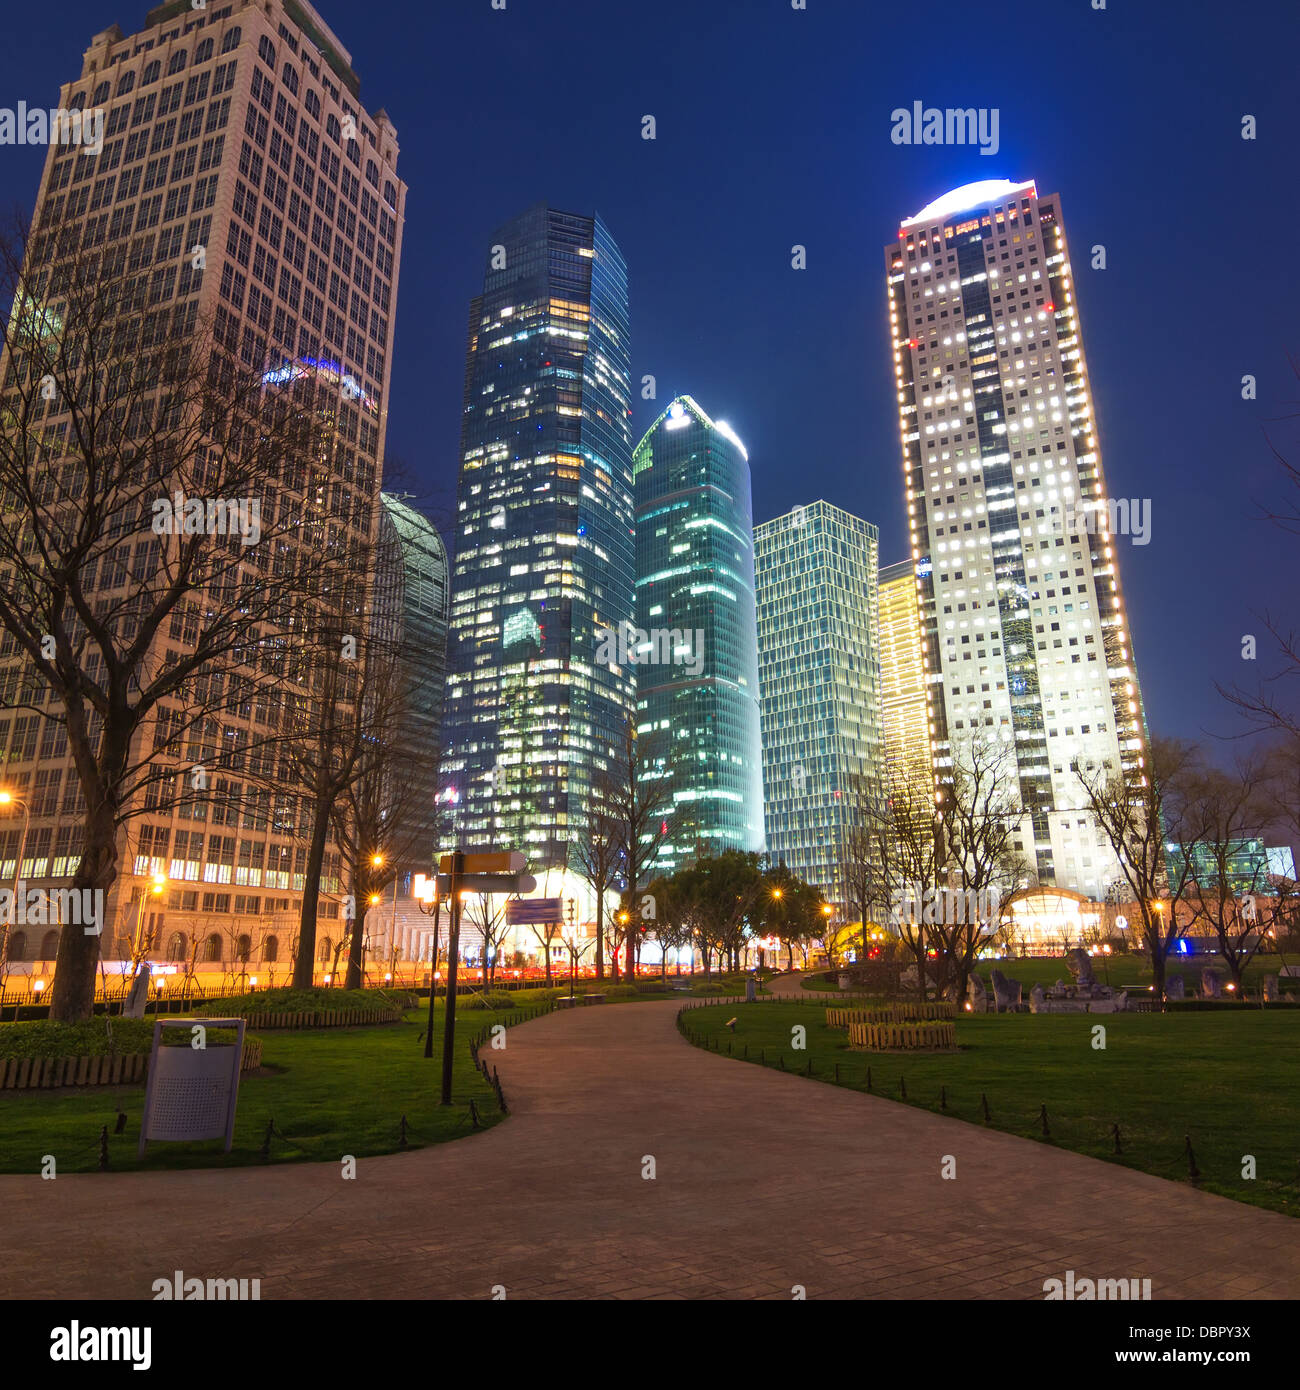 Light trails sur rue avec arrière-plan bâtiment moderne à Shanghai, Chine Banque D'Images